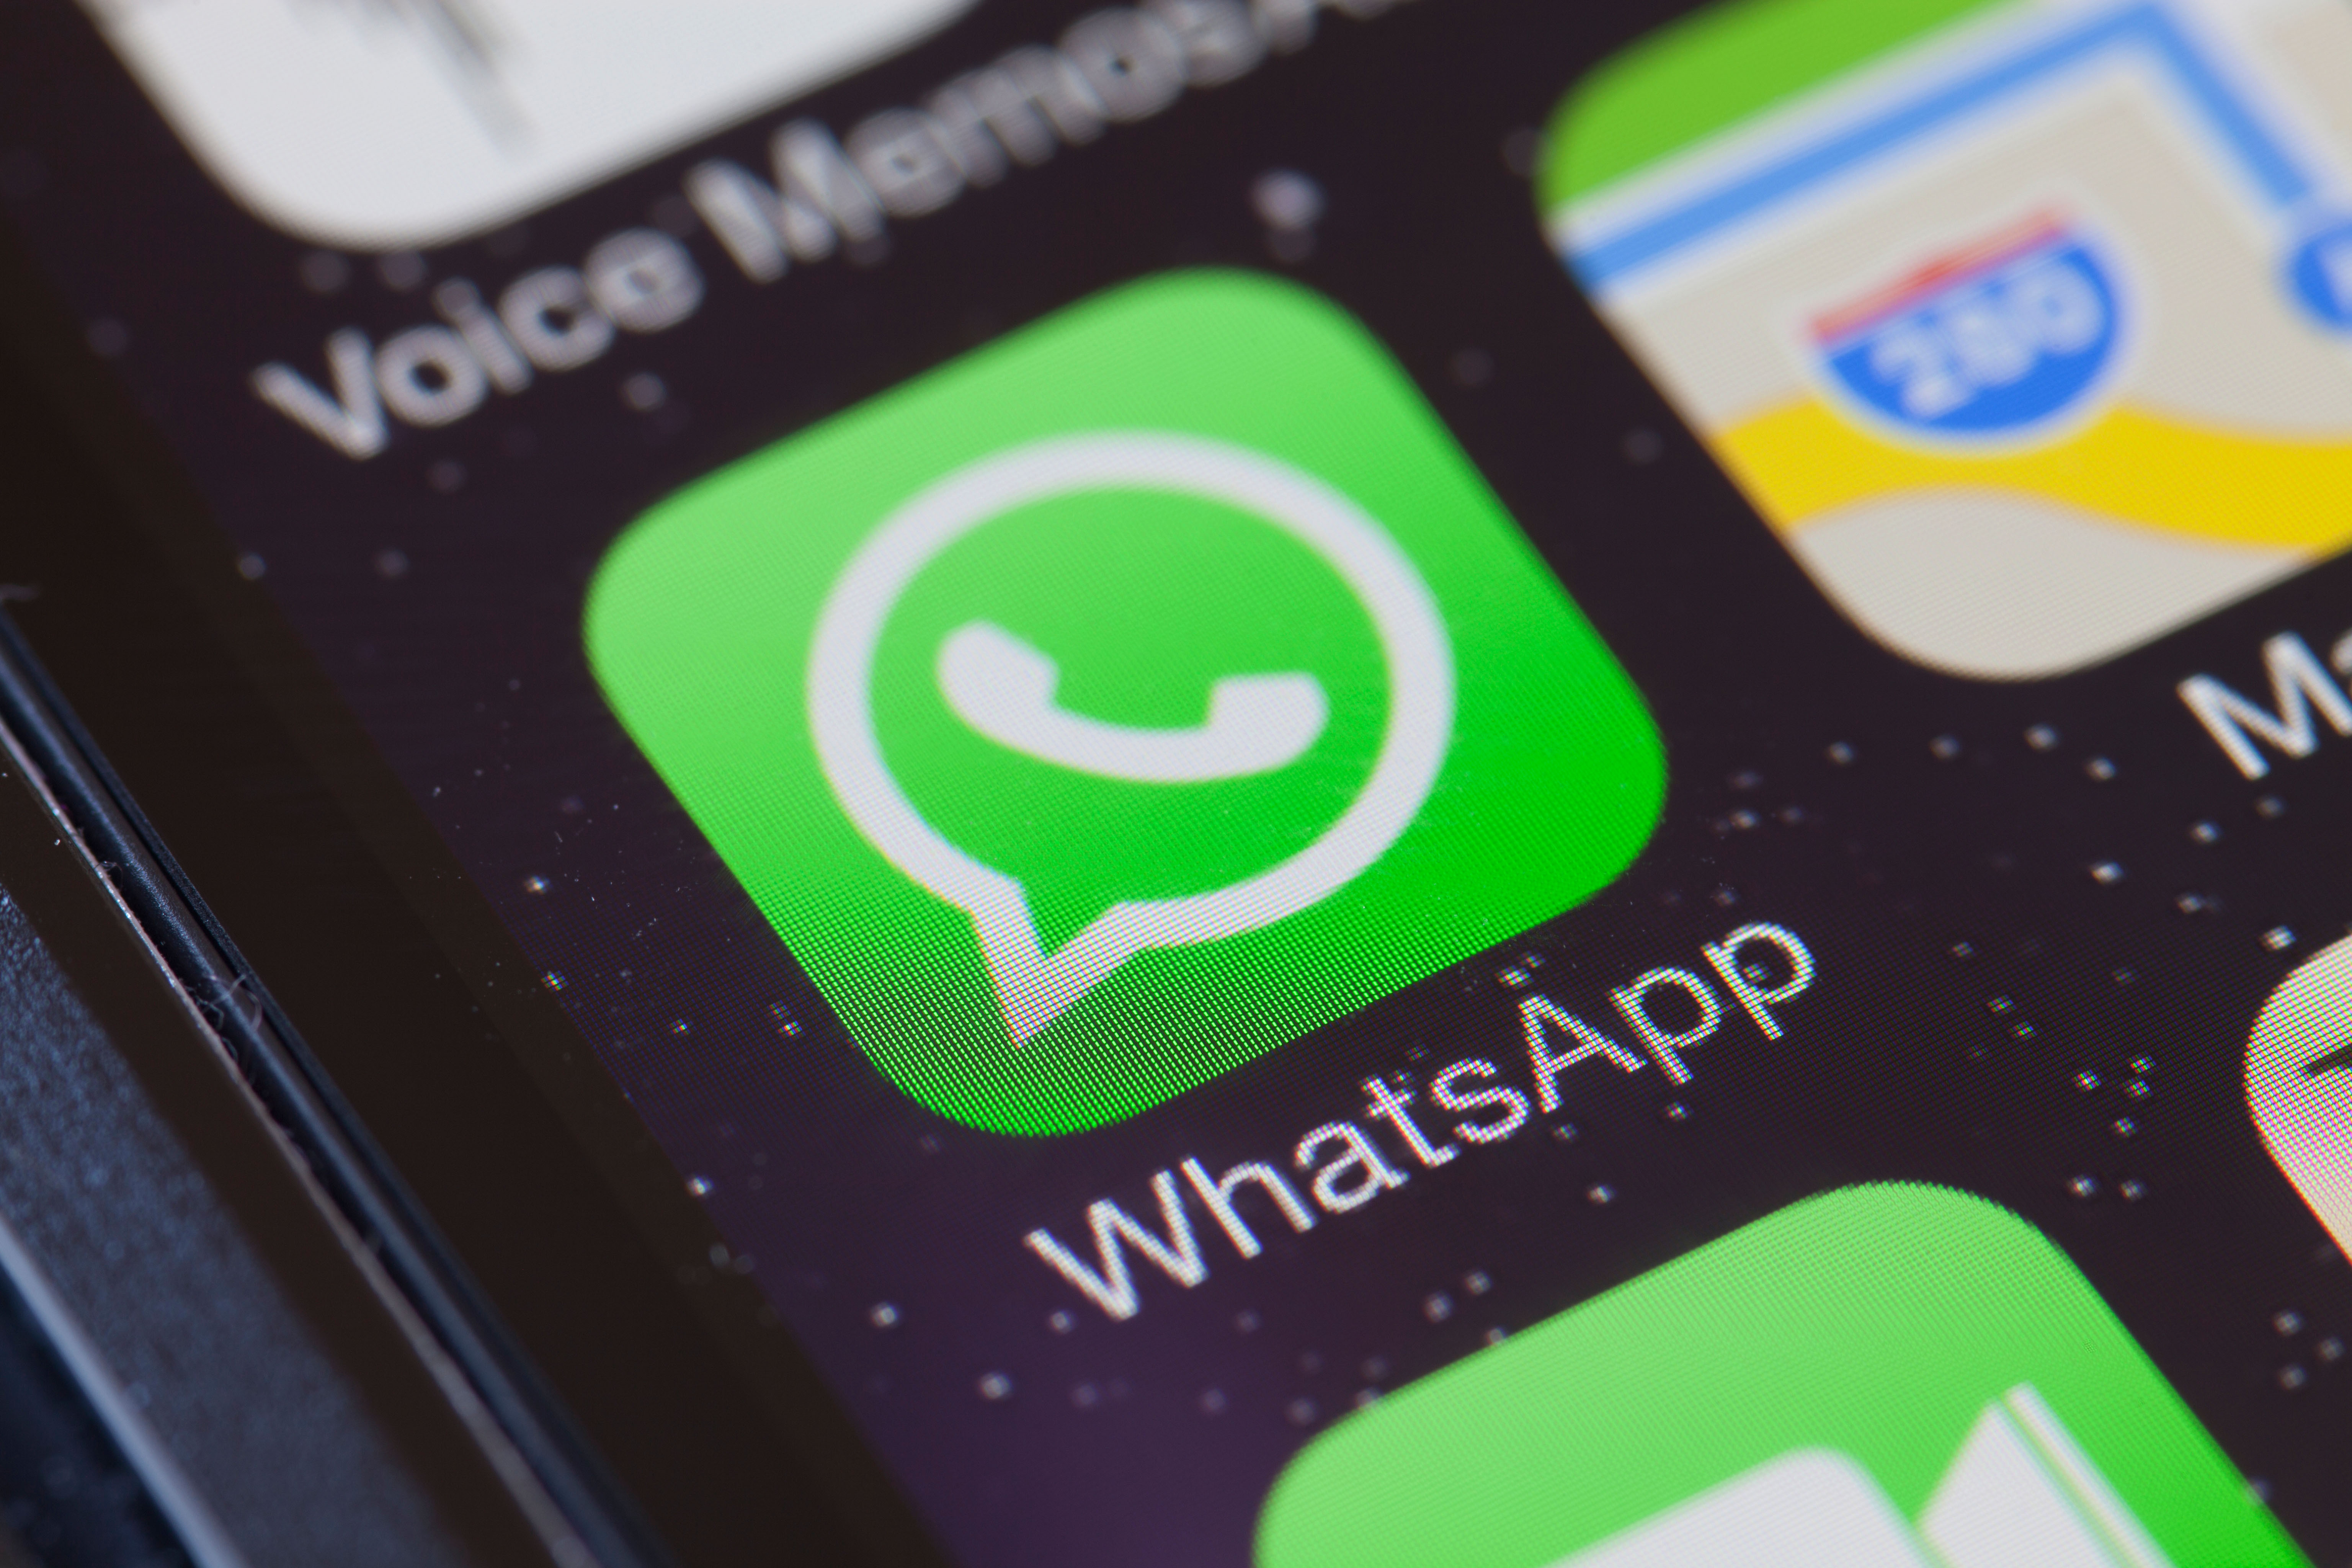  WhatsApp telah berada di bawah pengawasan untuk digunakan untuk menyebarkan informasi yang salah dan berita palsu